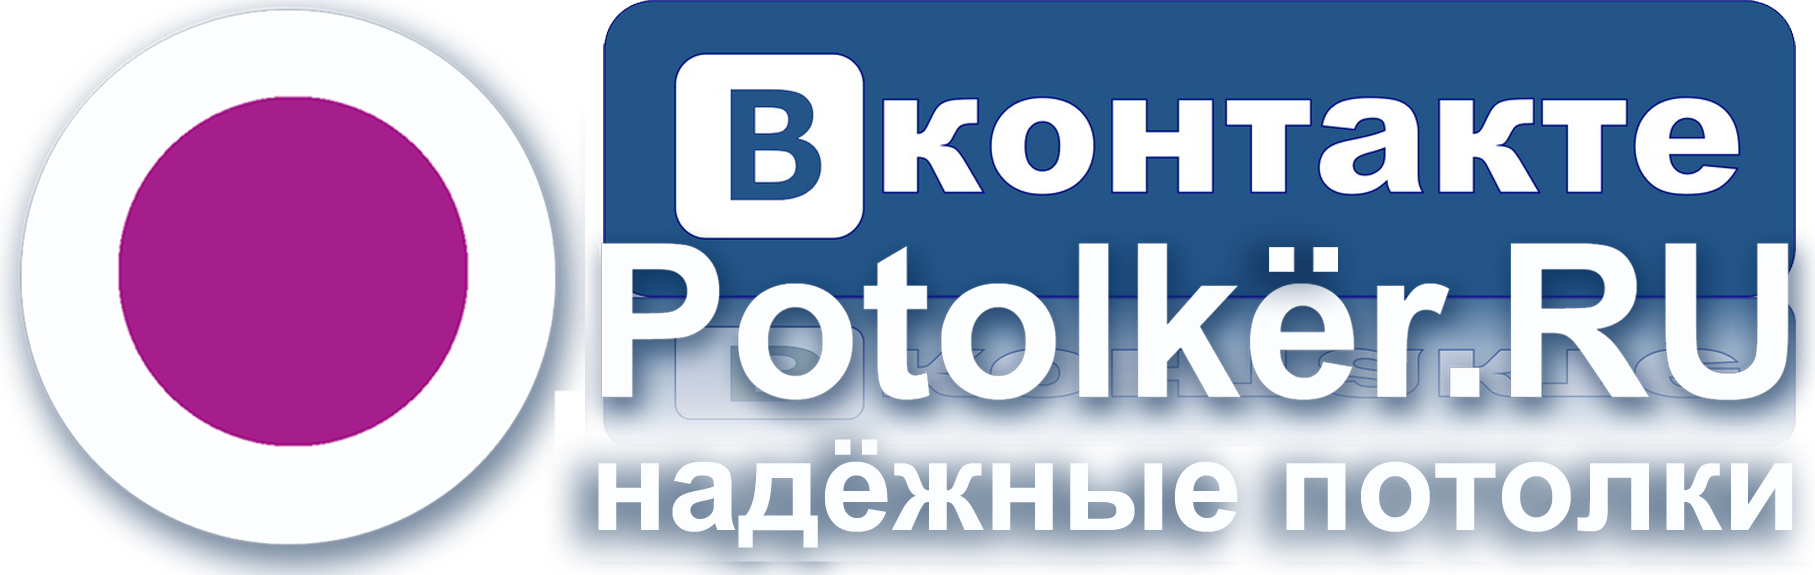 Приглашаем в нашу группу Вконтакте Potolker.RU Натяжные потолки